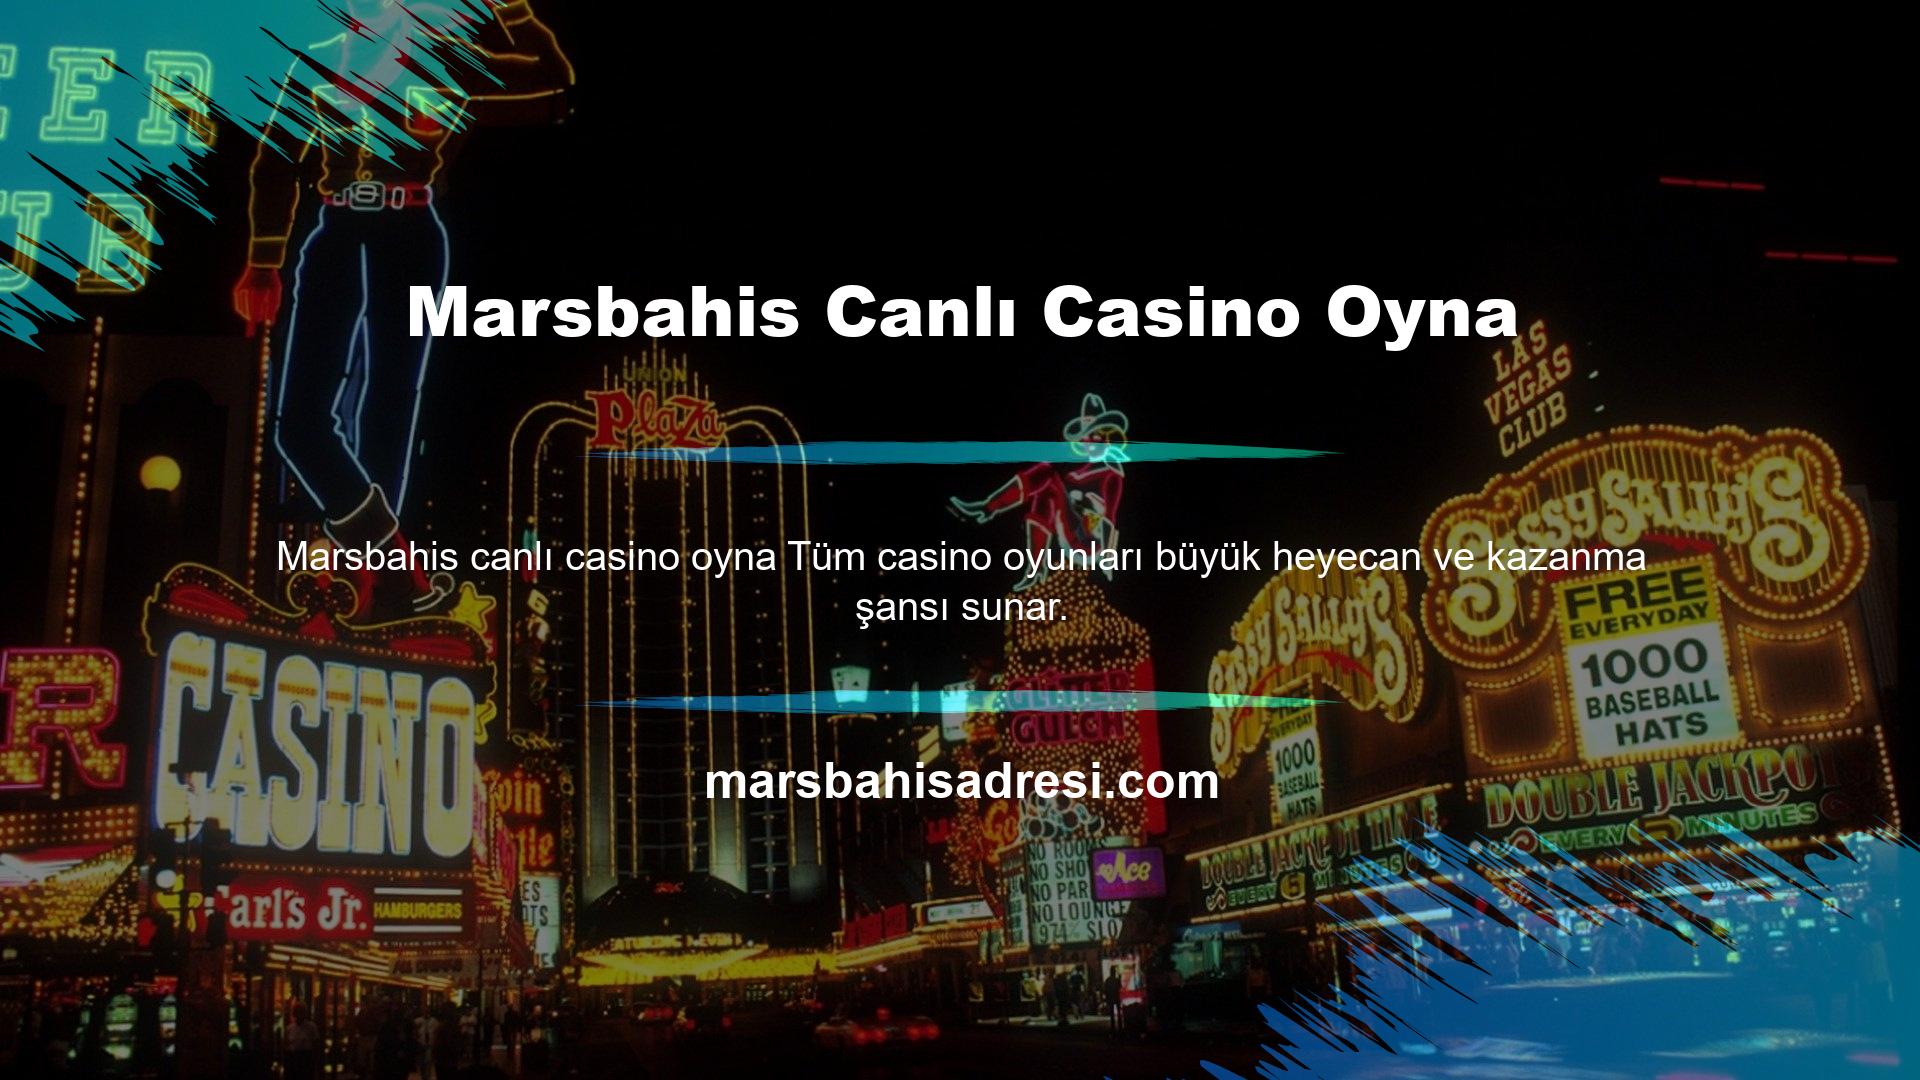 Casinodaki Marsbahis canlı casino oyna ve oynanış gerçek bir casinodaki ile aynıdır